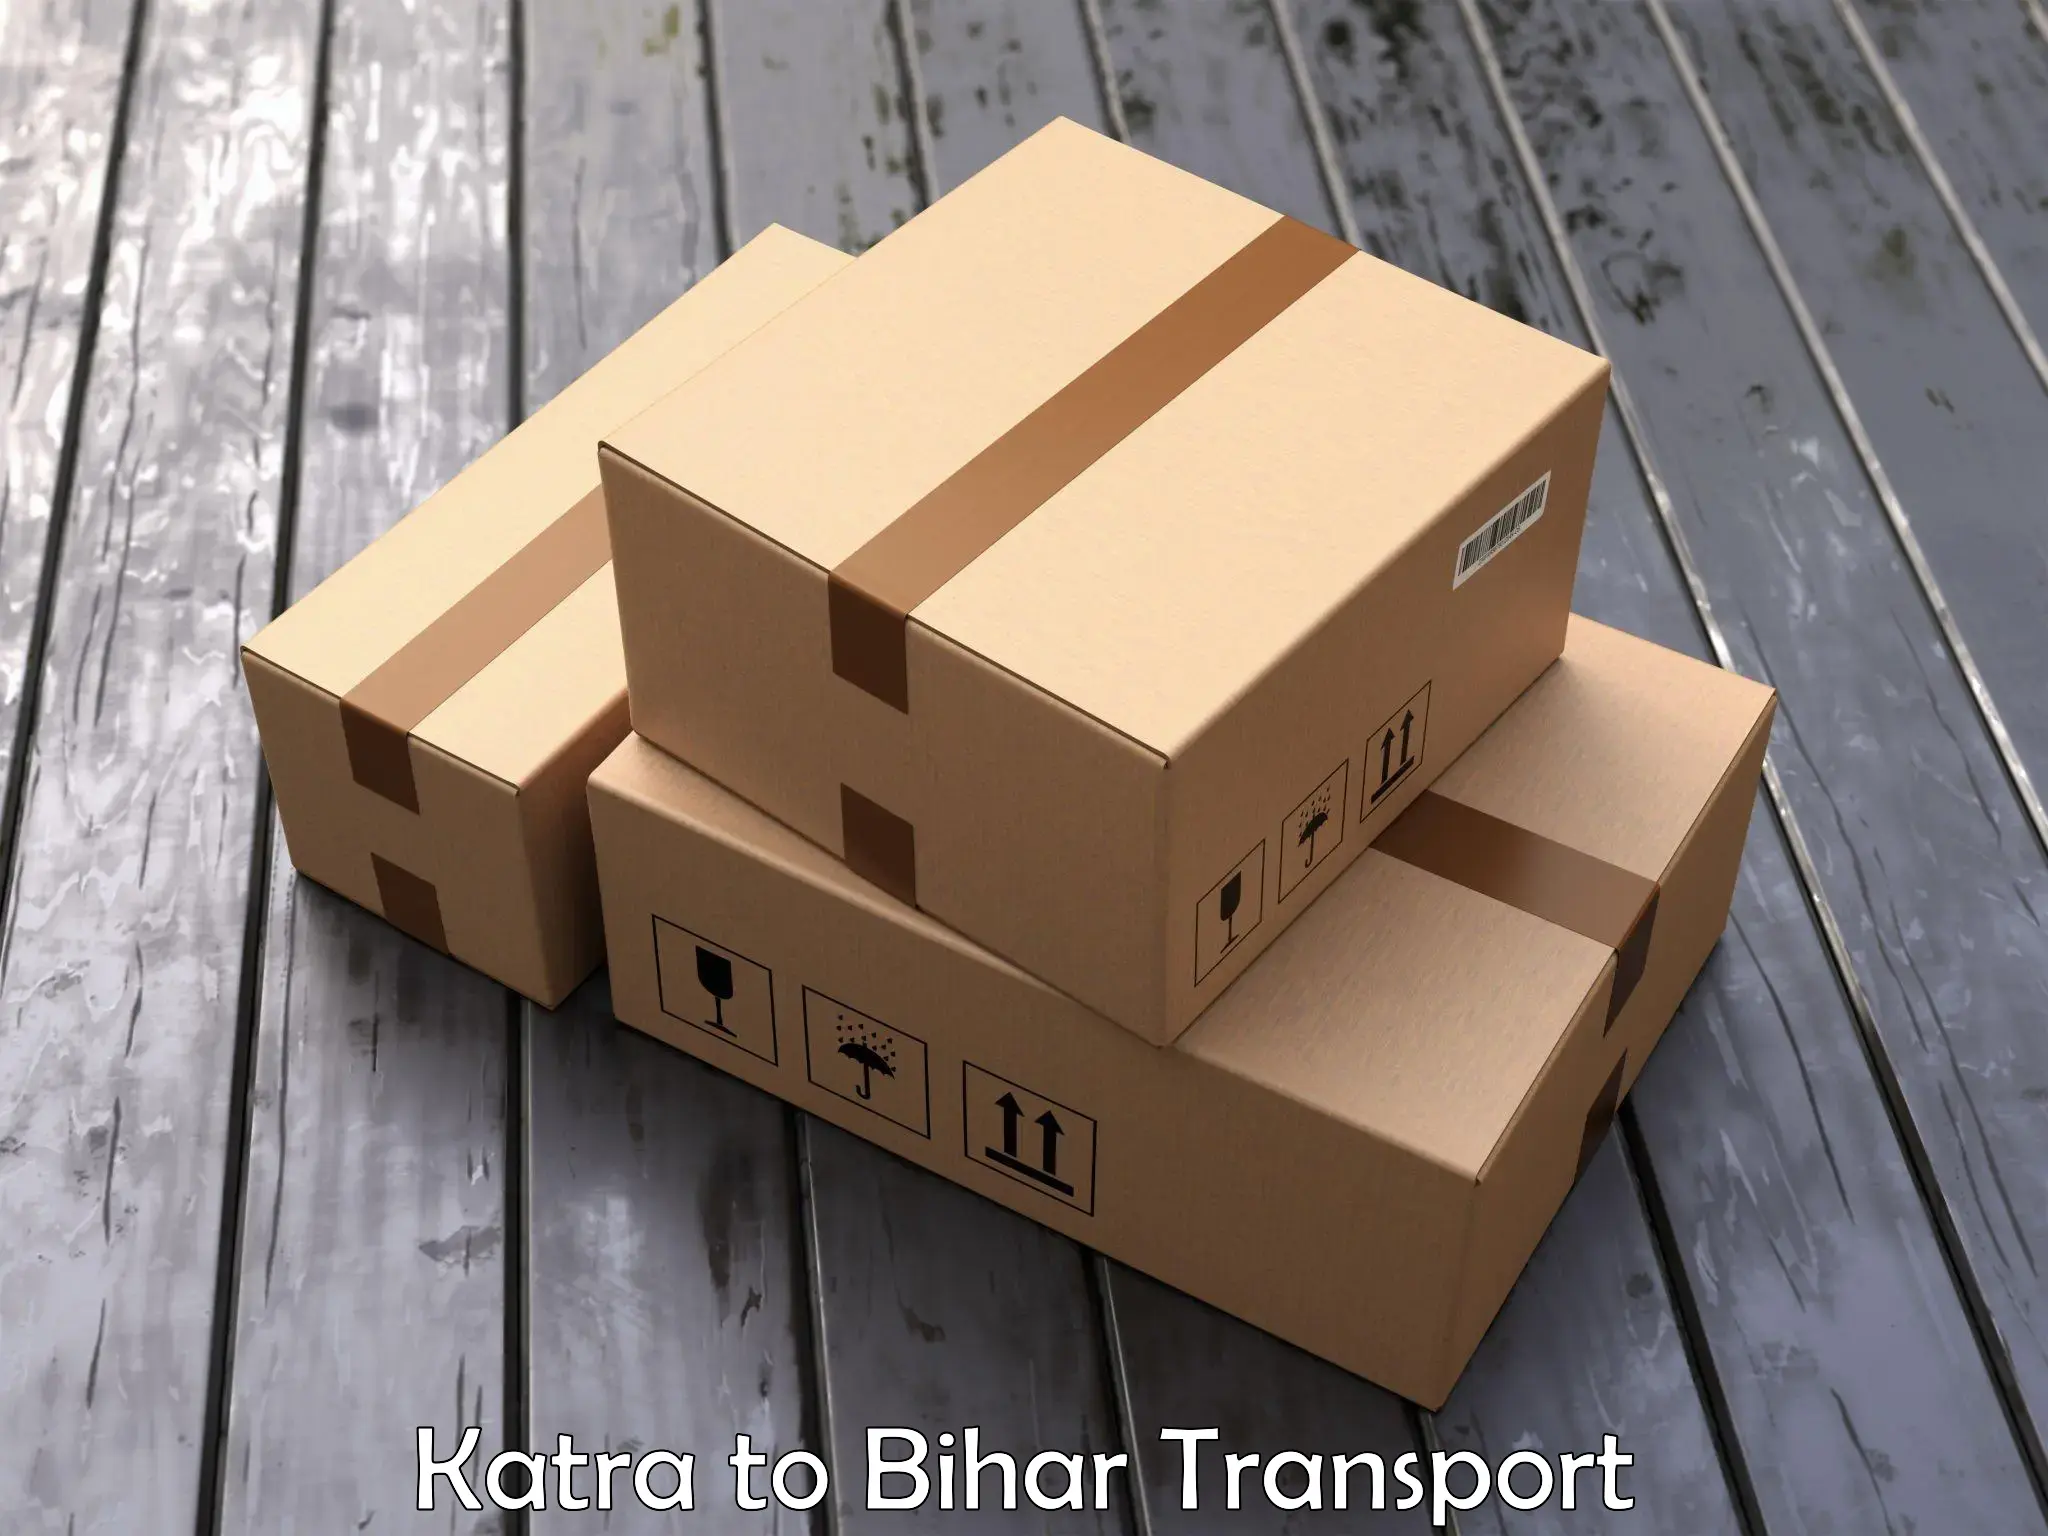 Nearest transport service in Katra to Jiwdhara